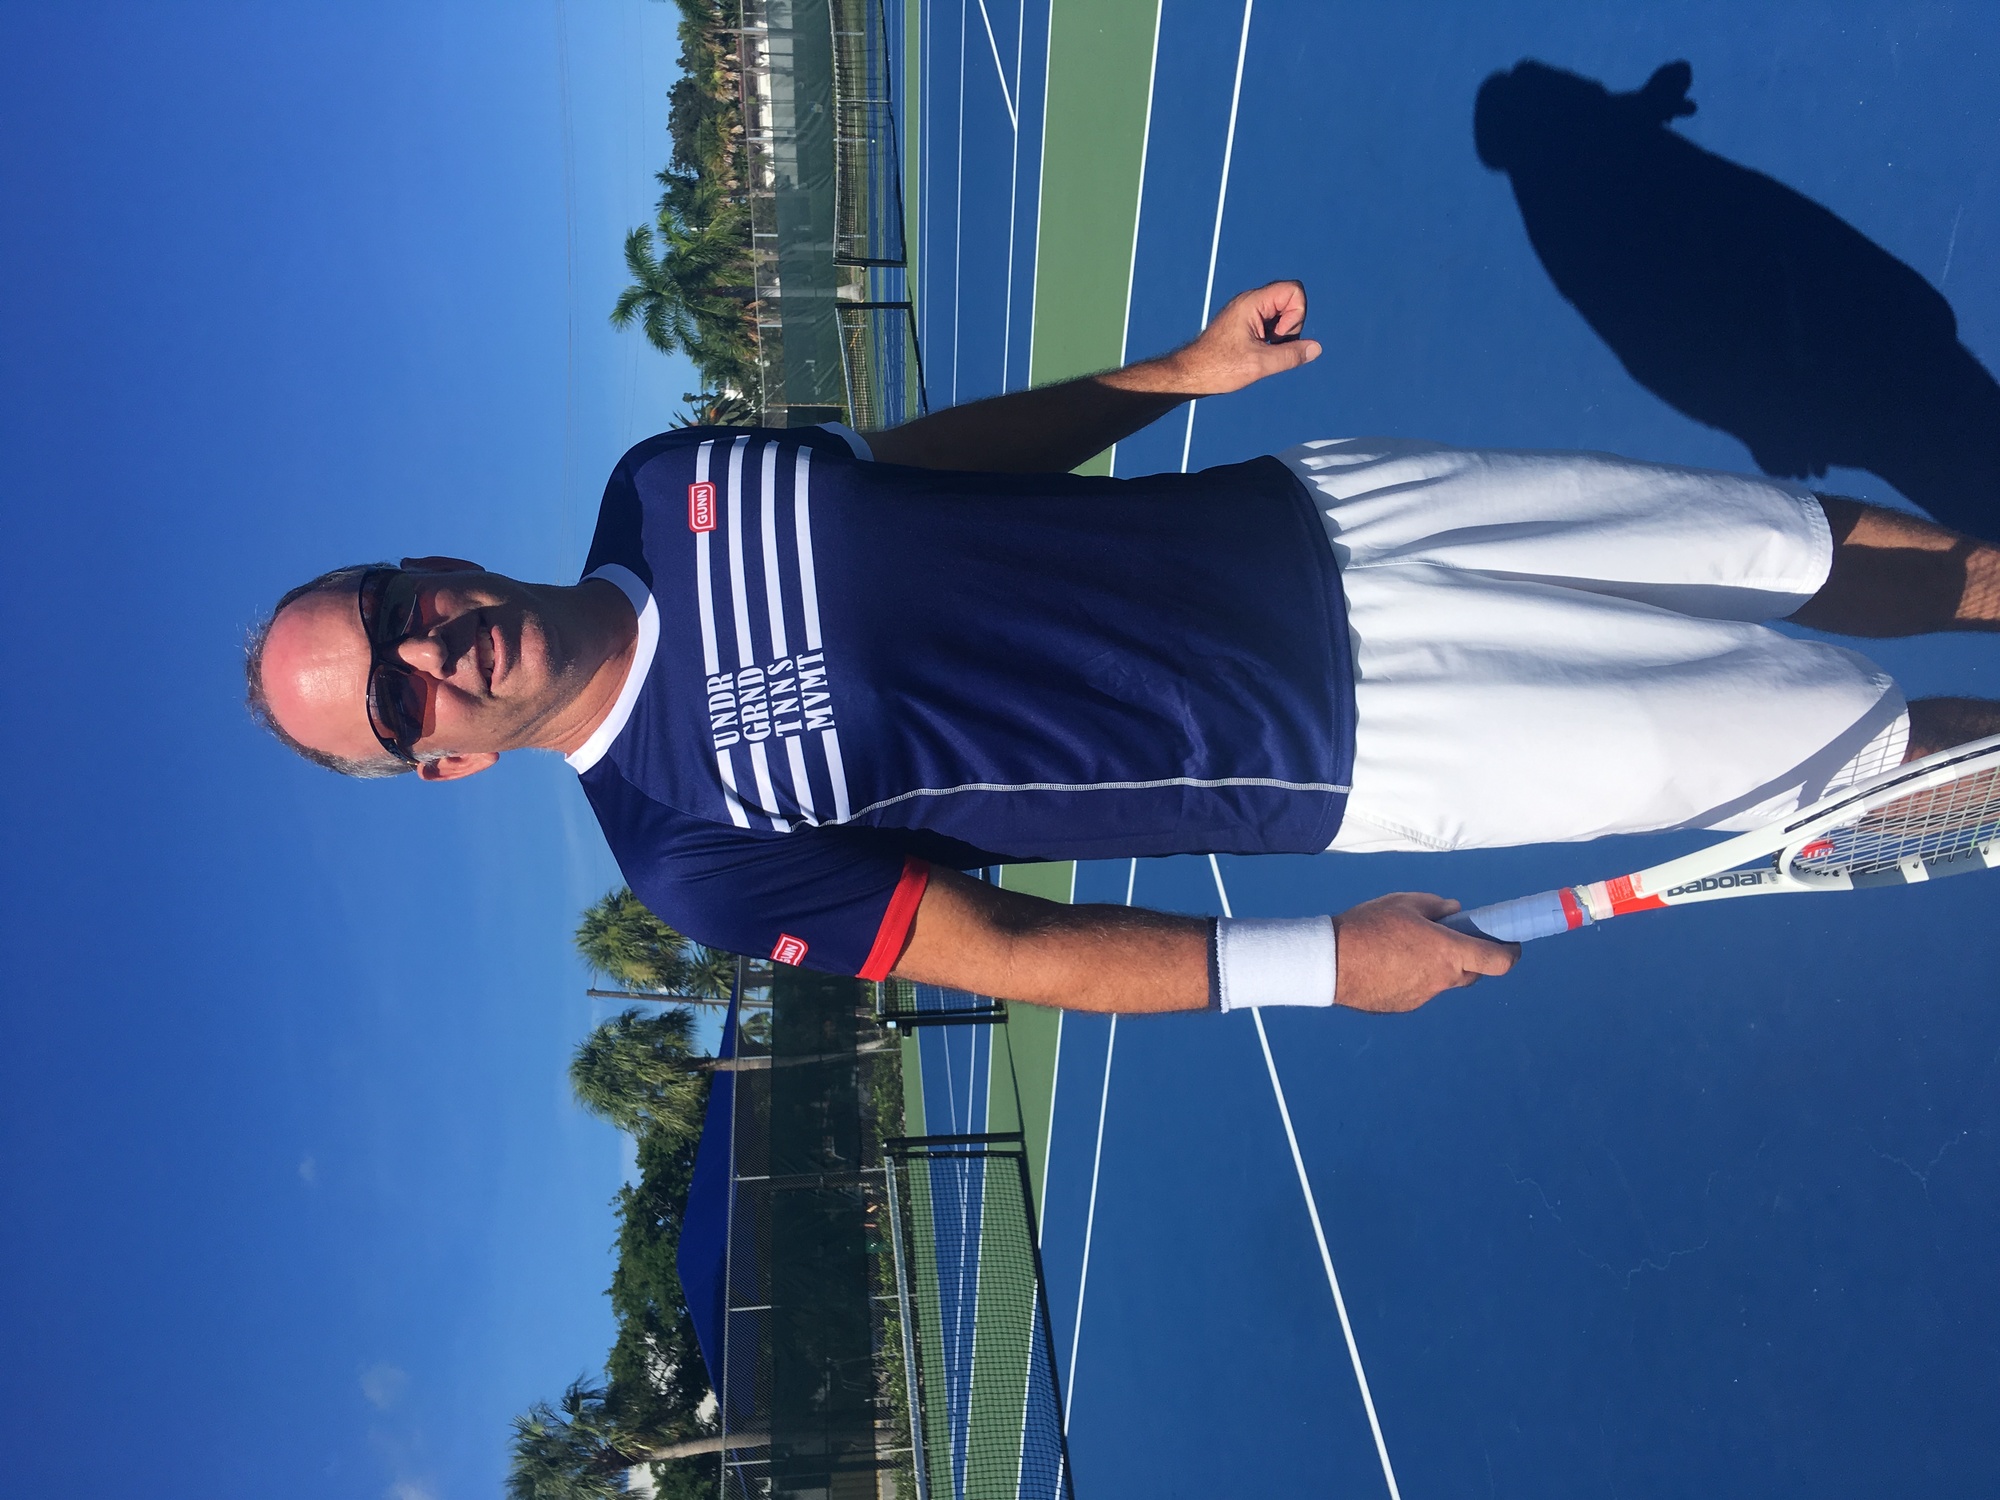 Brian L. teaches tennis lessons in Coral Gables, FL